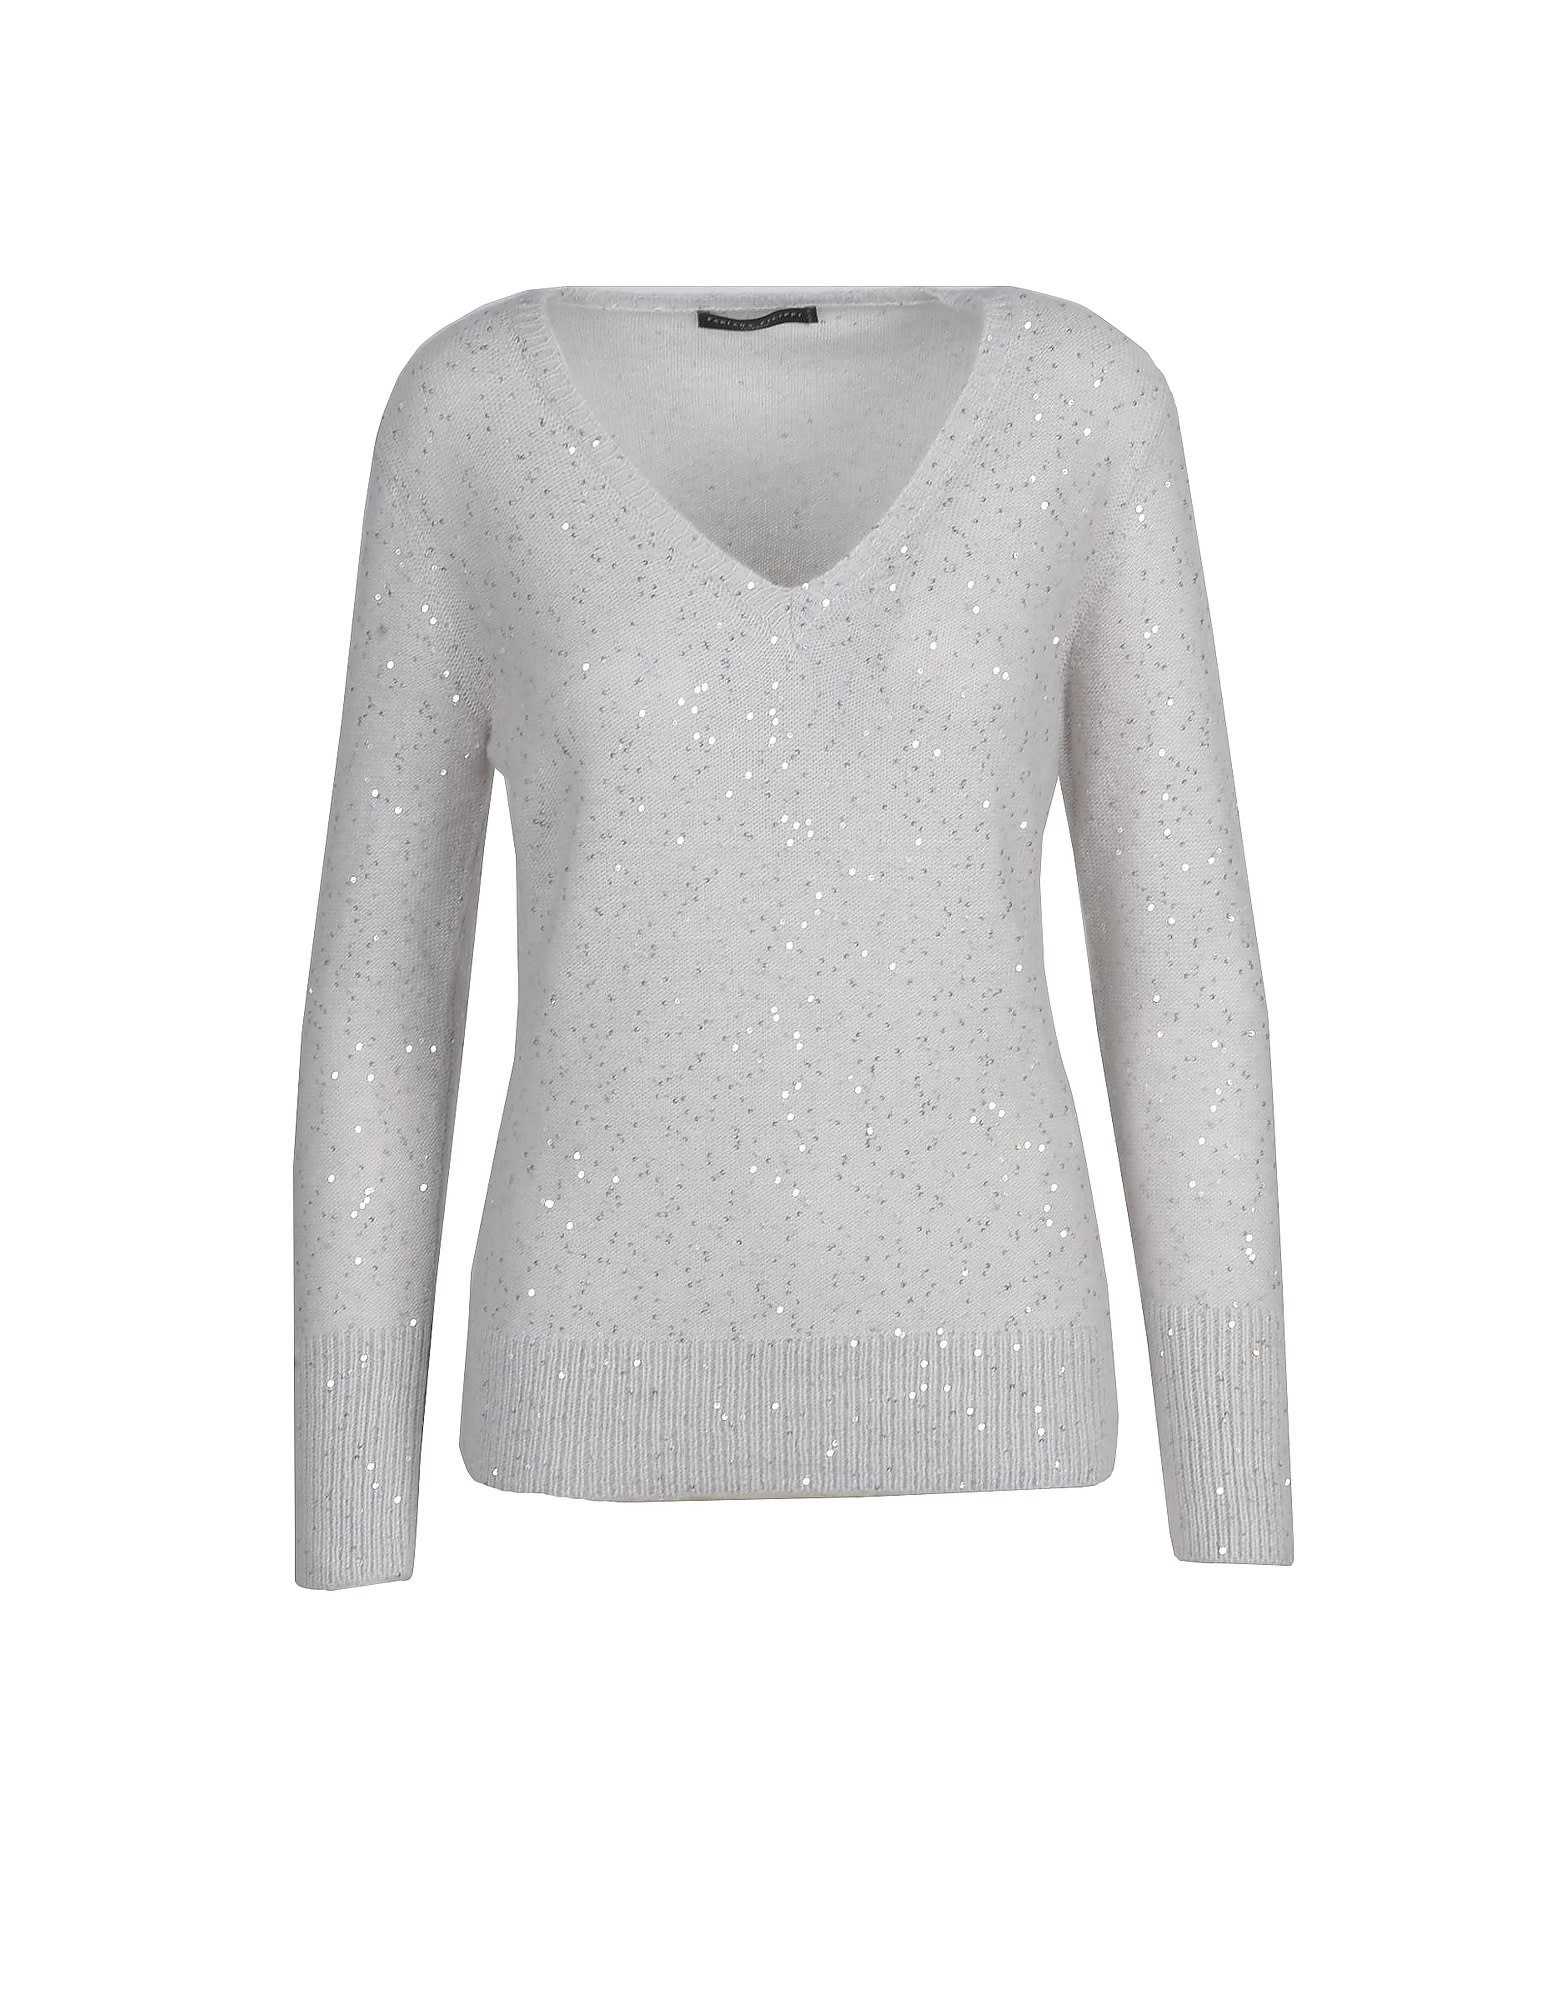 Fabiana Filippi Womens Light Gray Sweater